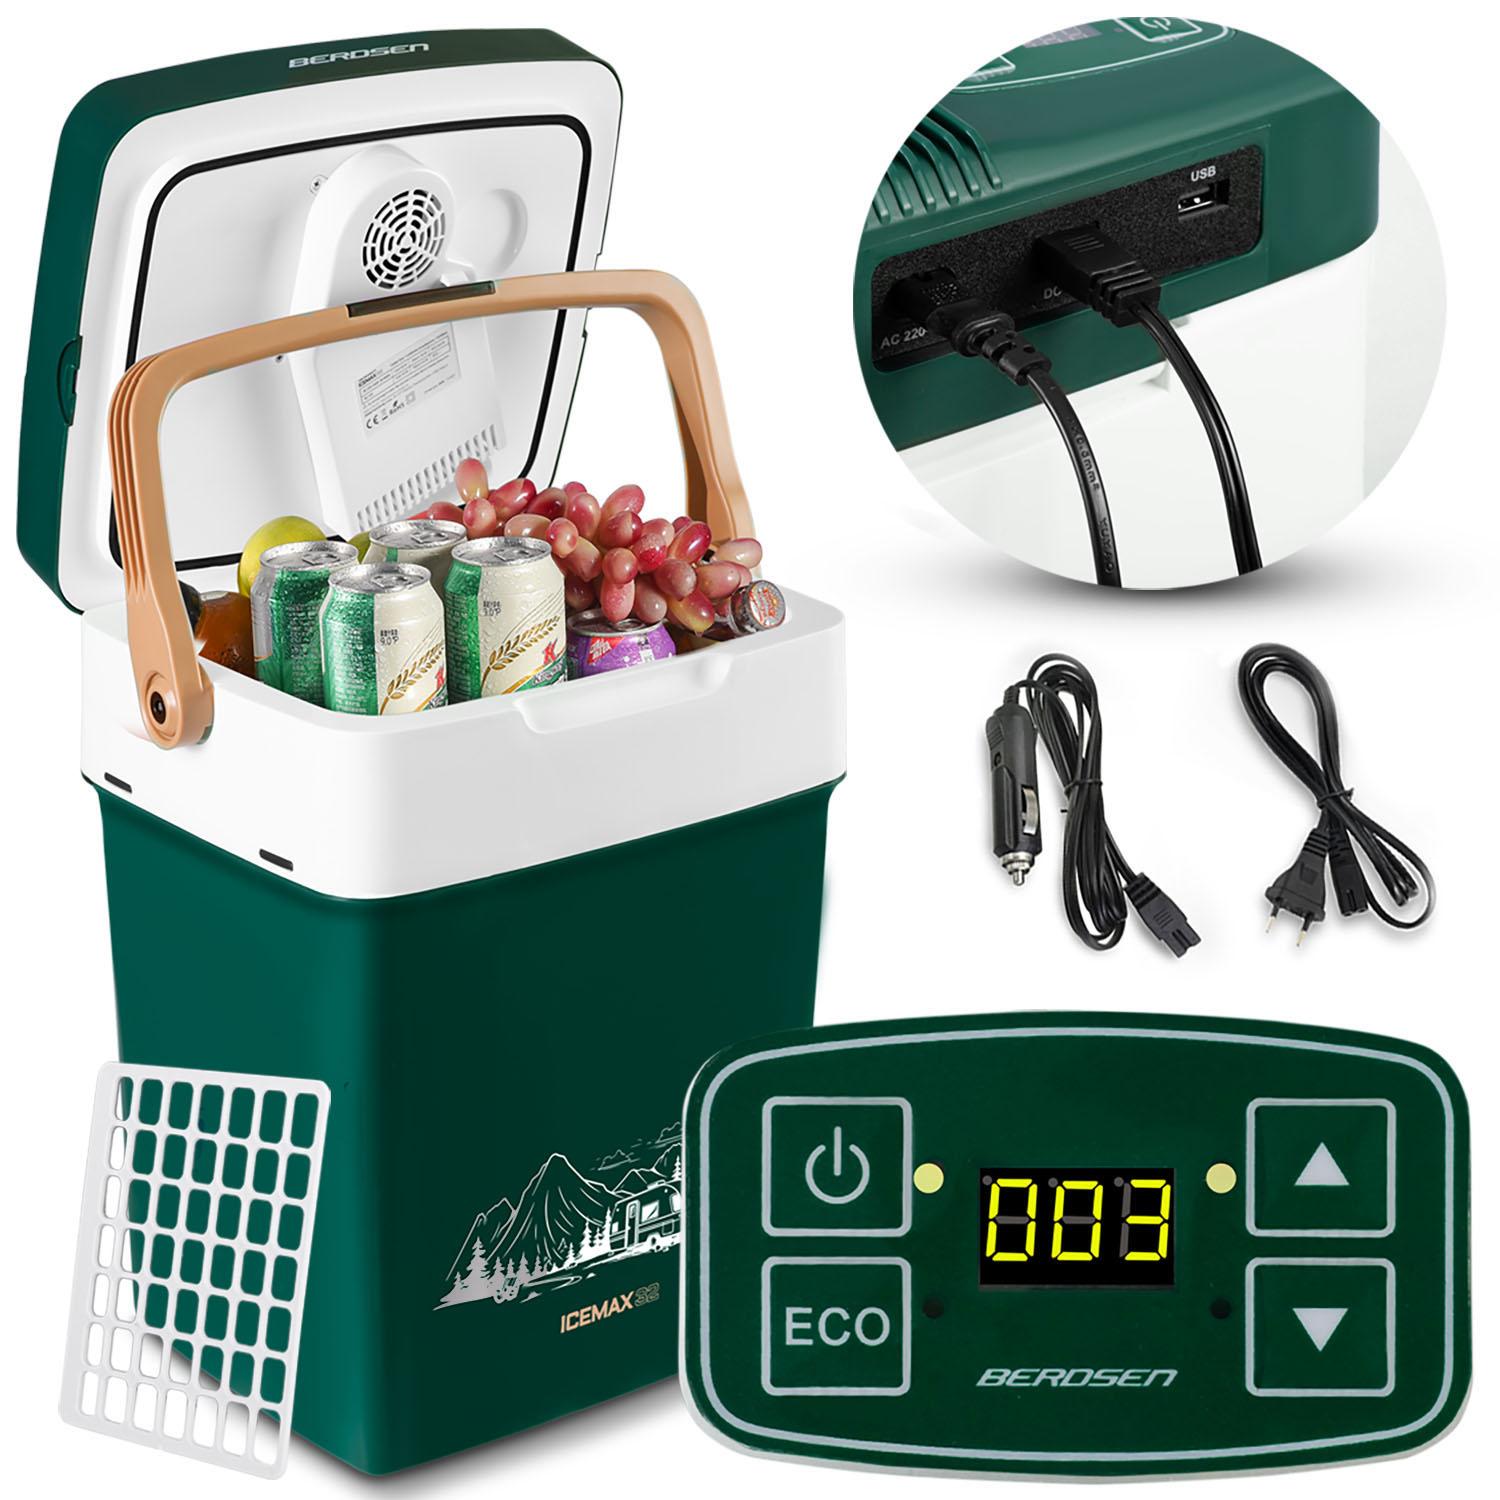 Turisztikai hűtőszekrény Icemax 2 in 1, 32 L, zöld | A Berdsen egy könnyű hűtőszekrény hűtő-fűtő funkcióval, így minden utazásra alkalmas!